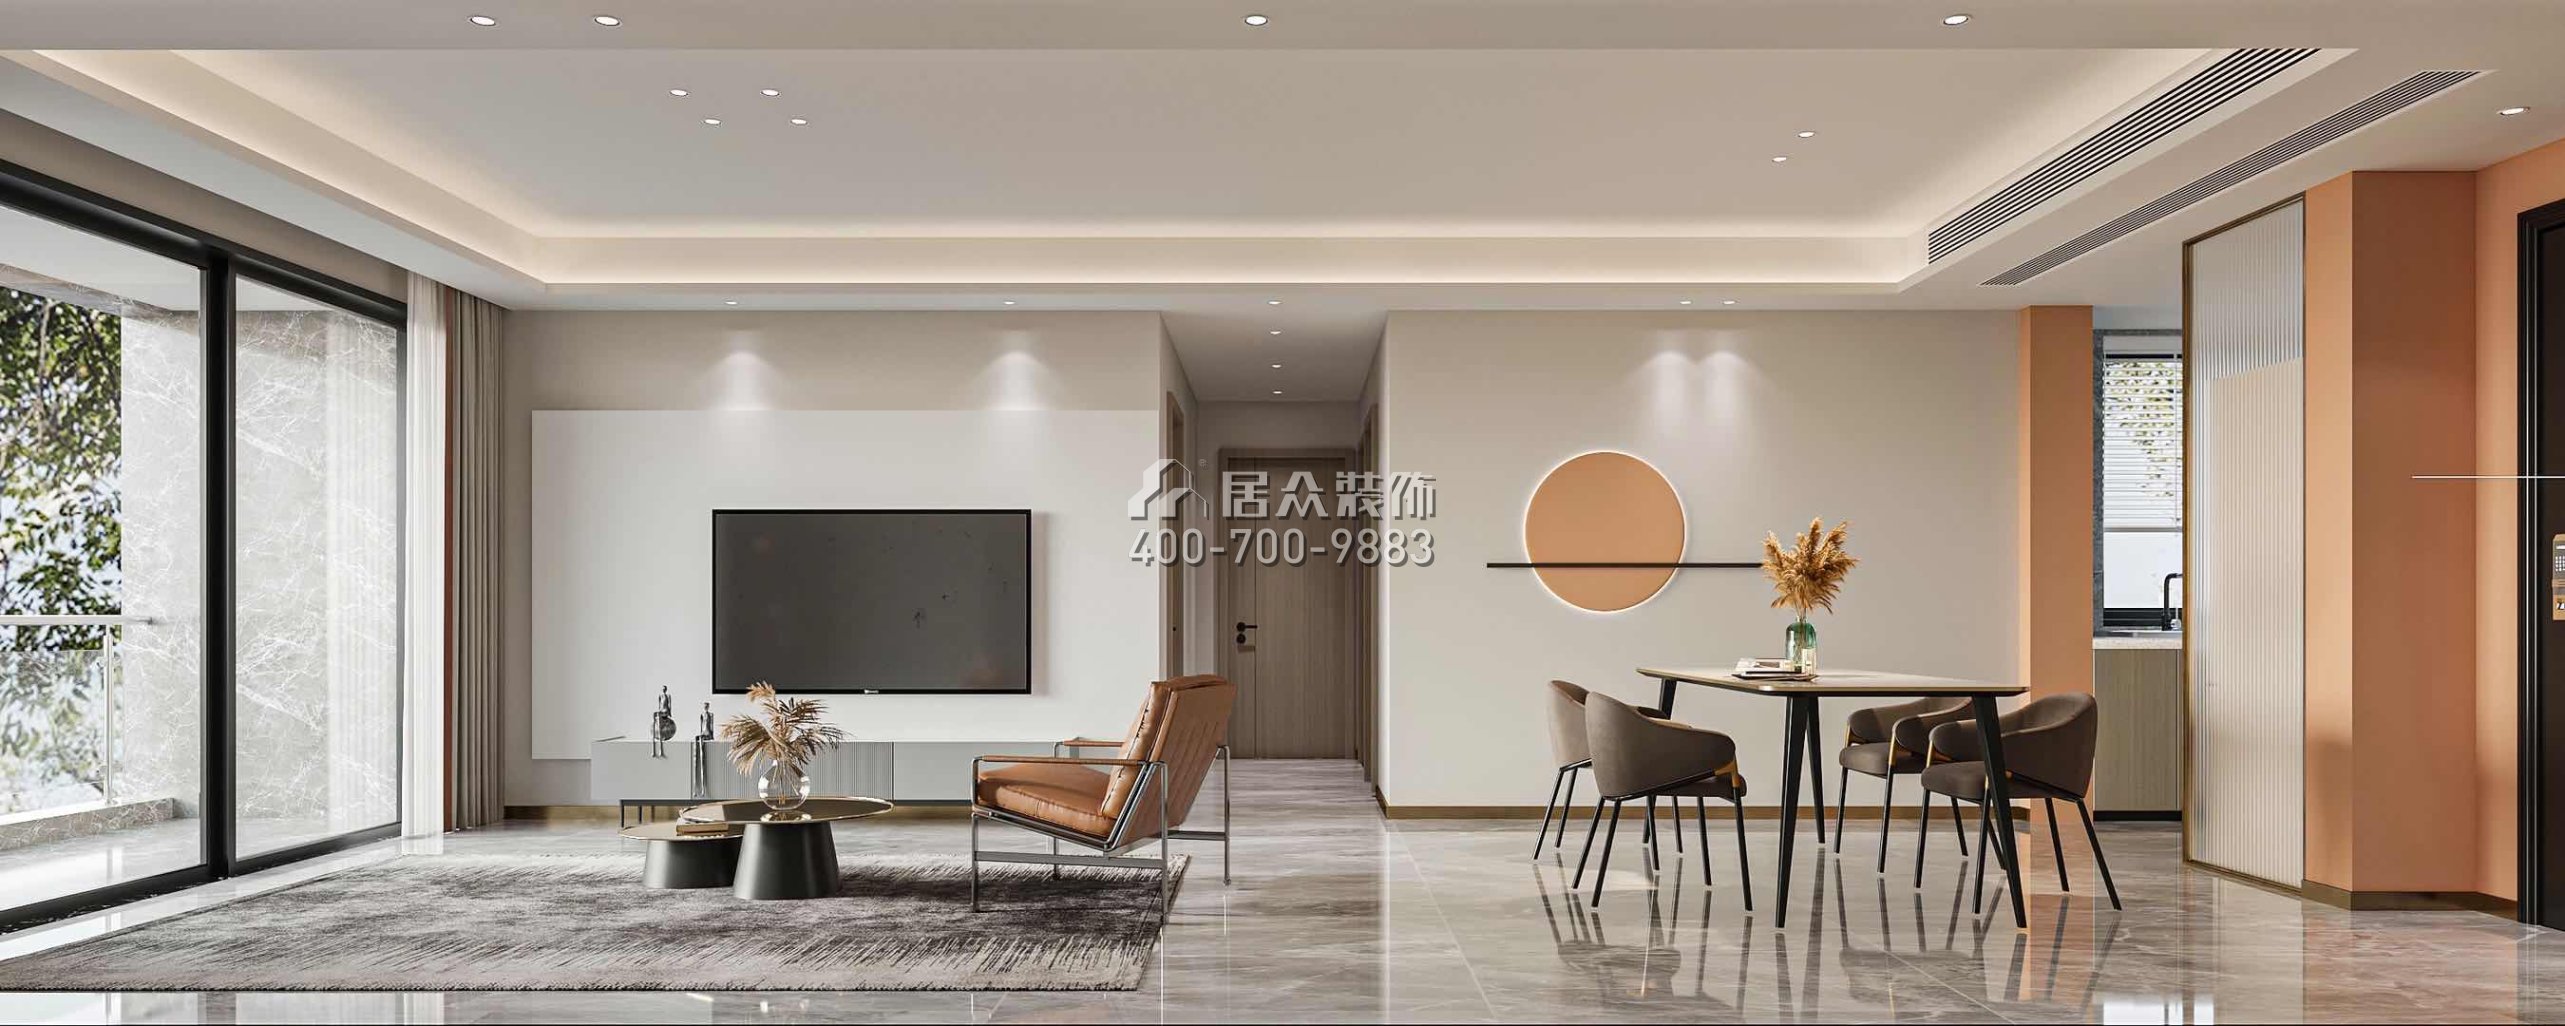 鴻榮源壹城中心120平方米現代簡約風格平層戶型客餐廳一體裝修效果圖